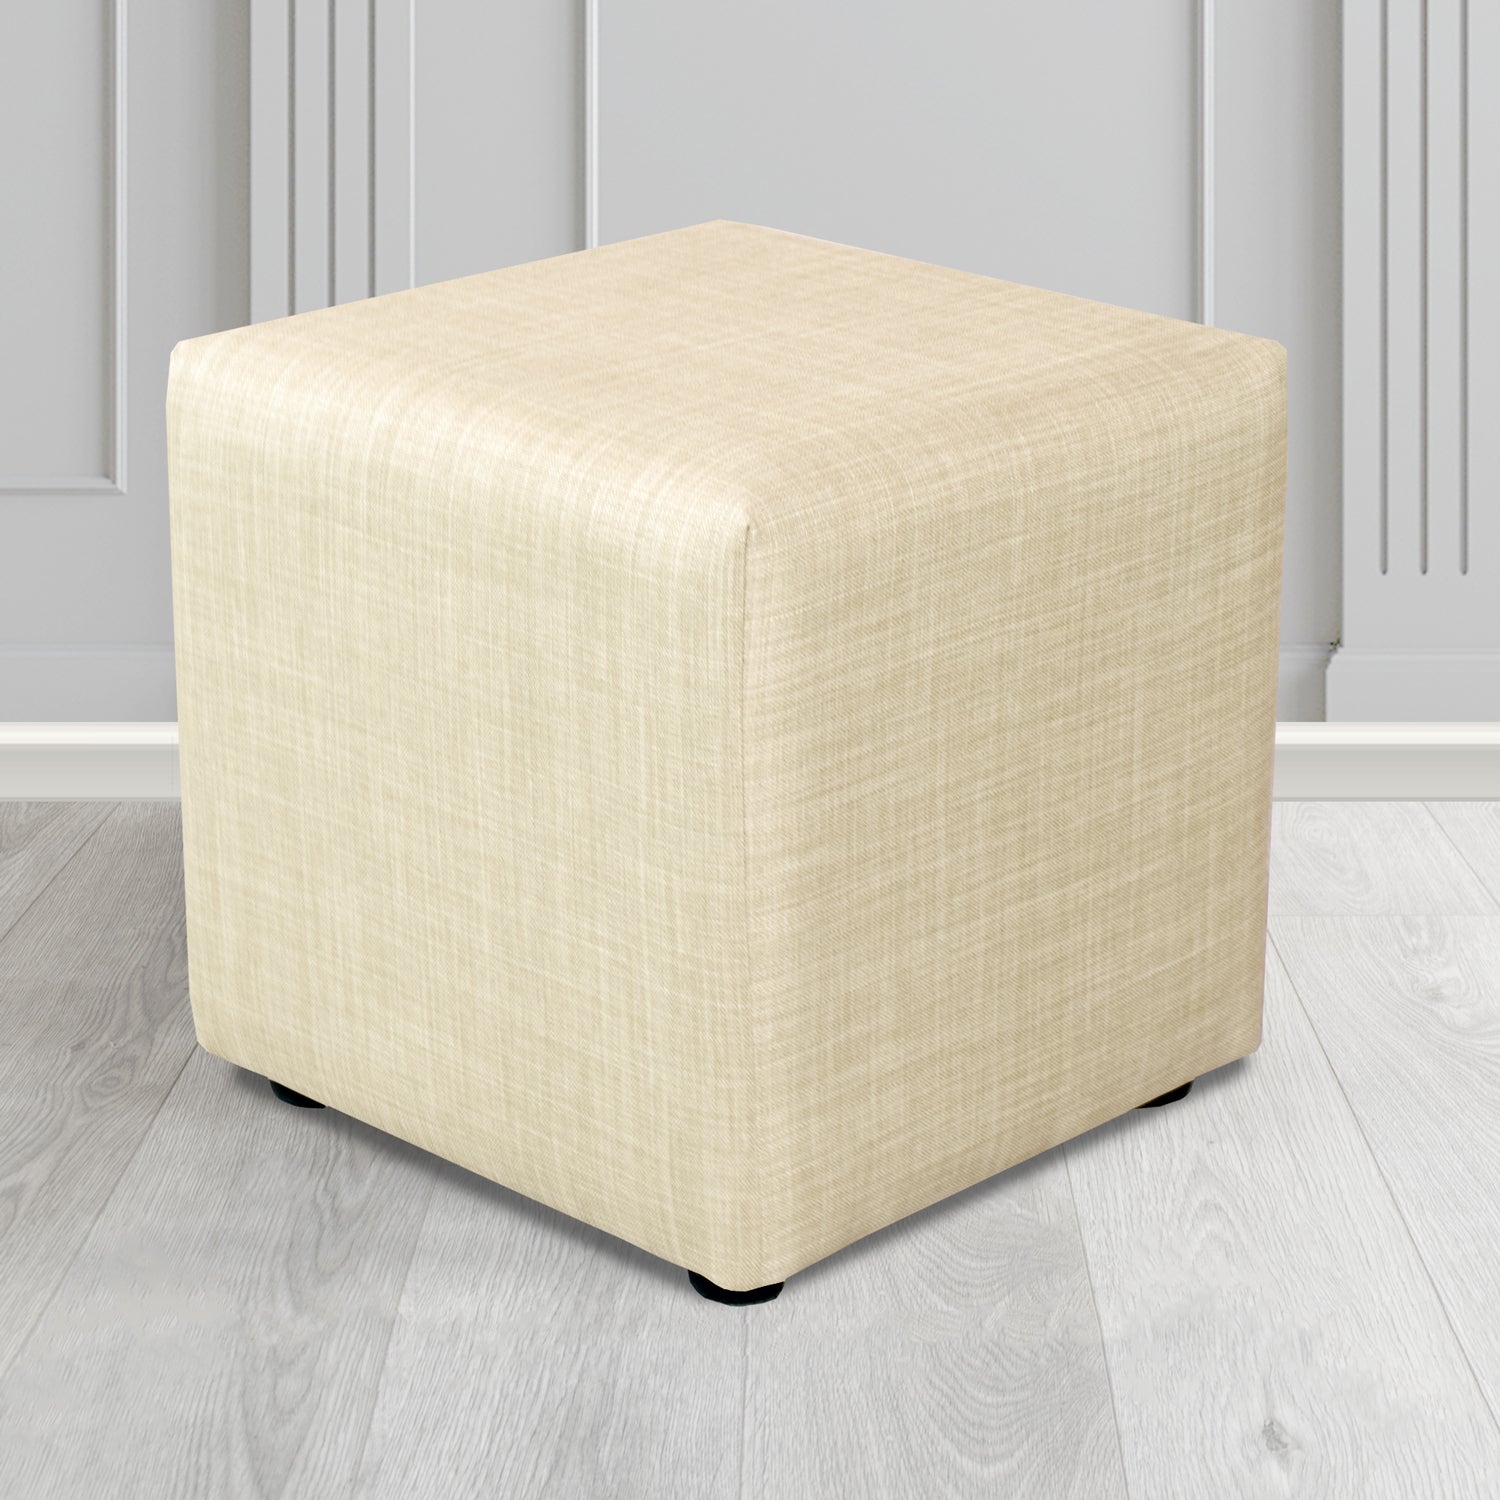 Paris Charles Cream Plain Linen Fabric Cube Footstool - The Tub Chair Shop